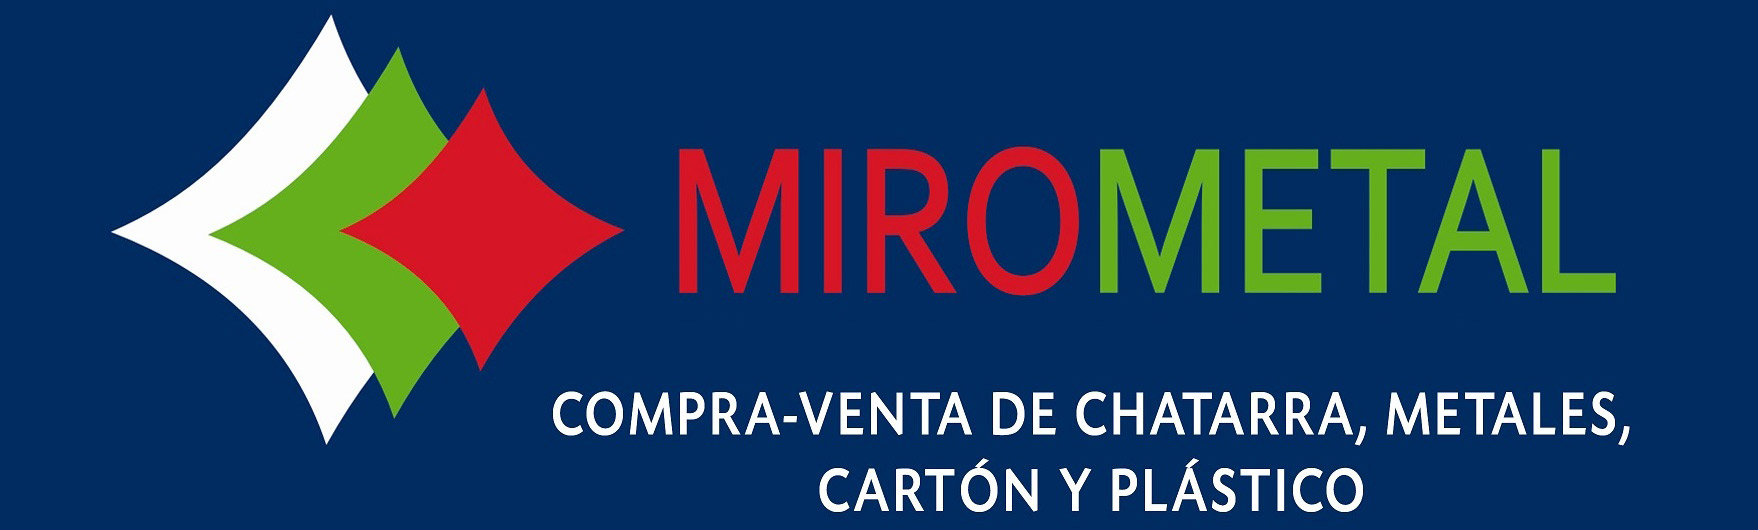 Mirometal logo